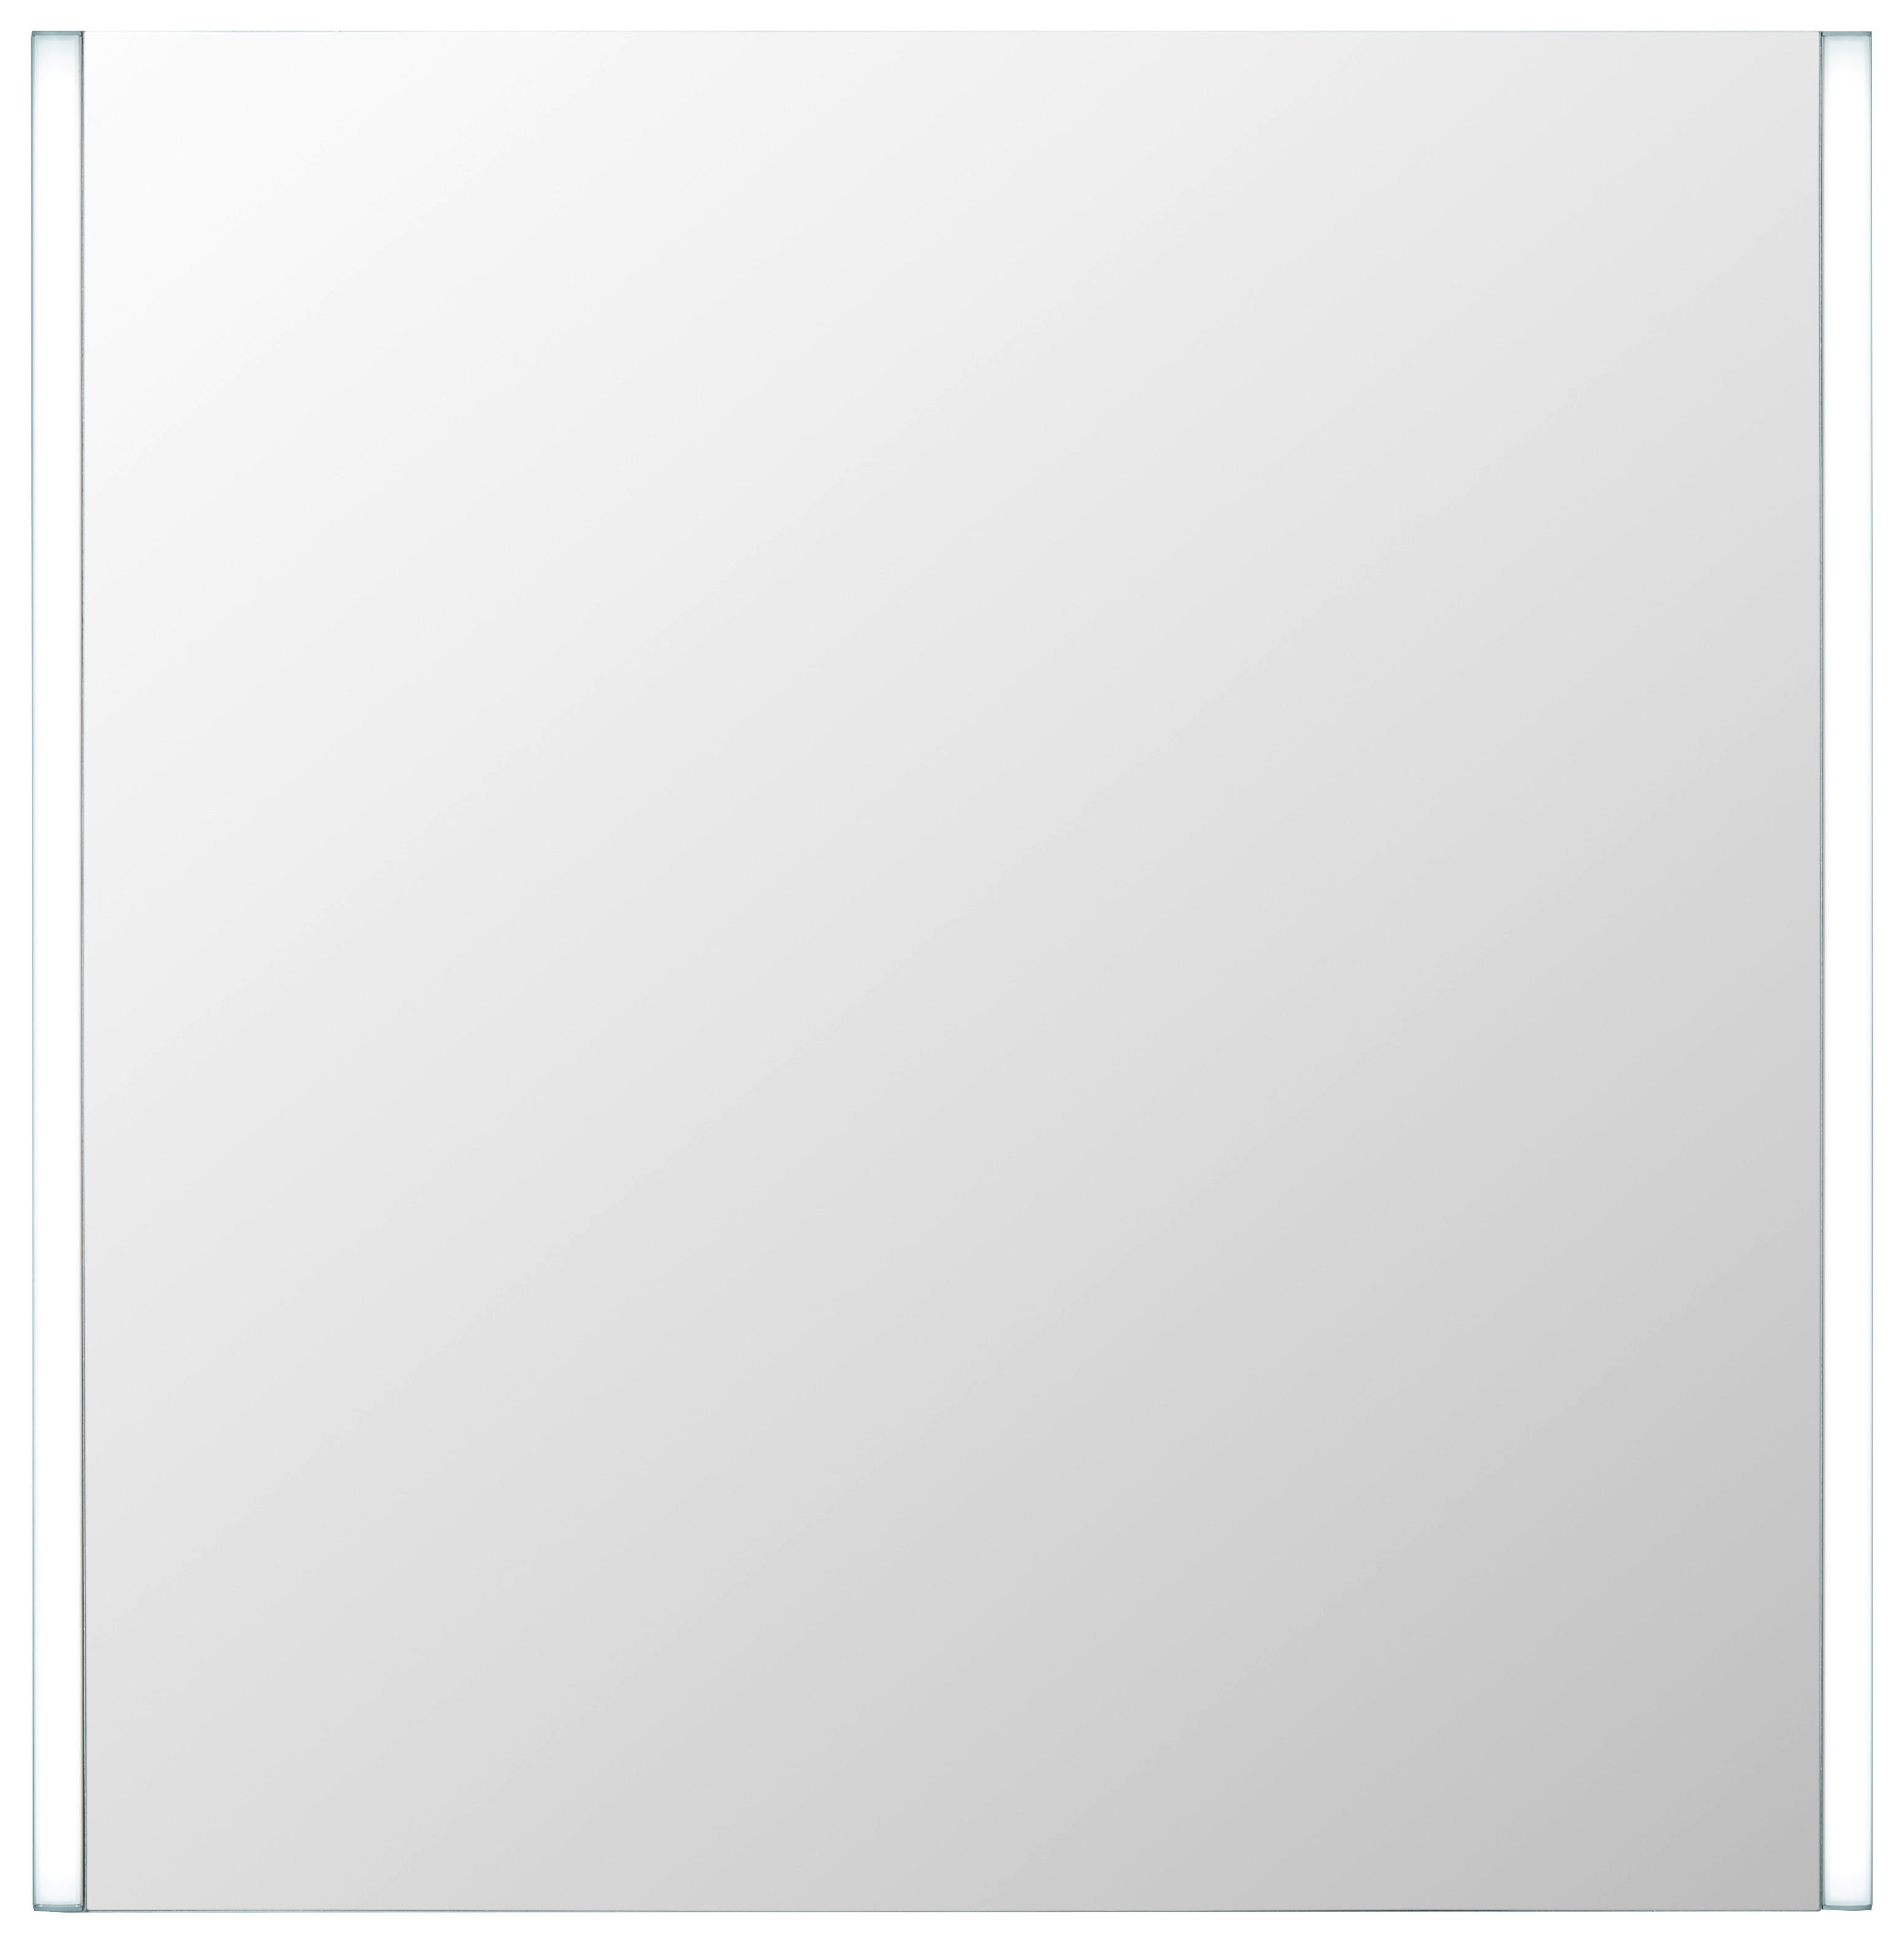 Leuchtspiegel in Weiß ca. 63x65cm - MODERN, Glas (63/65/3cm) - Modern Living